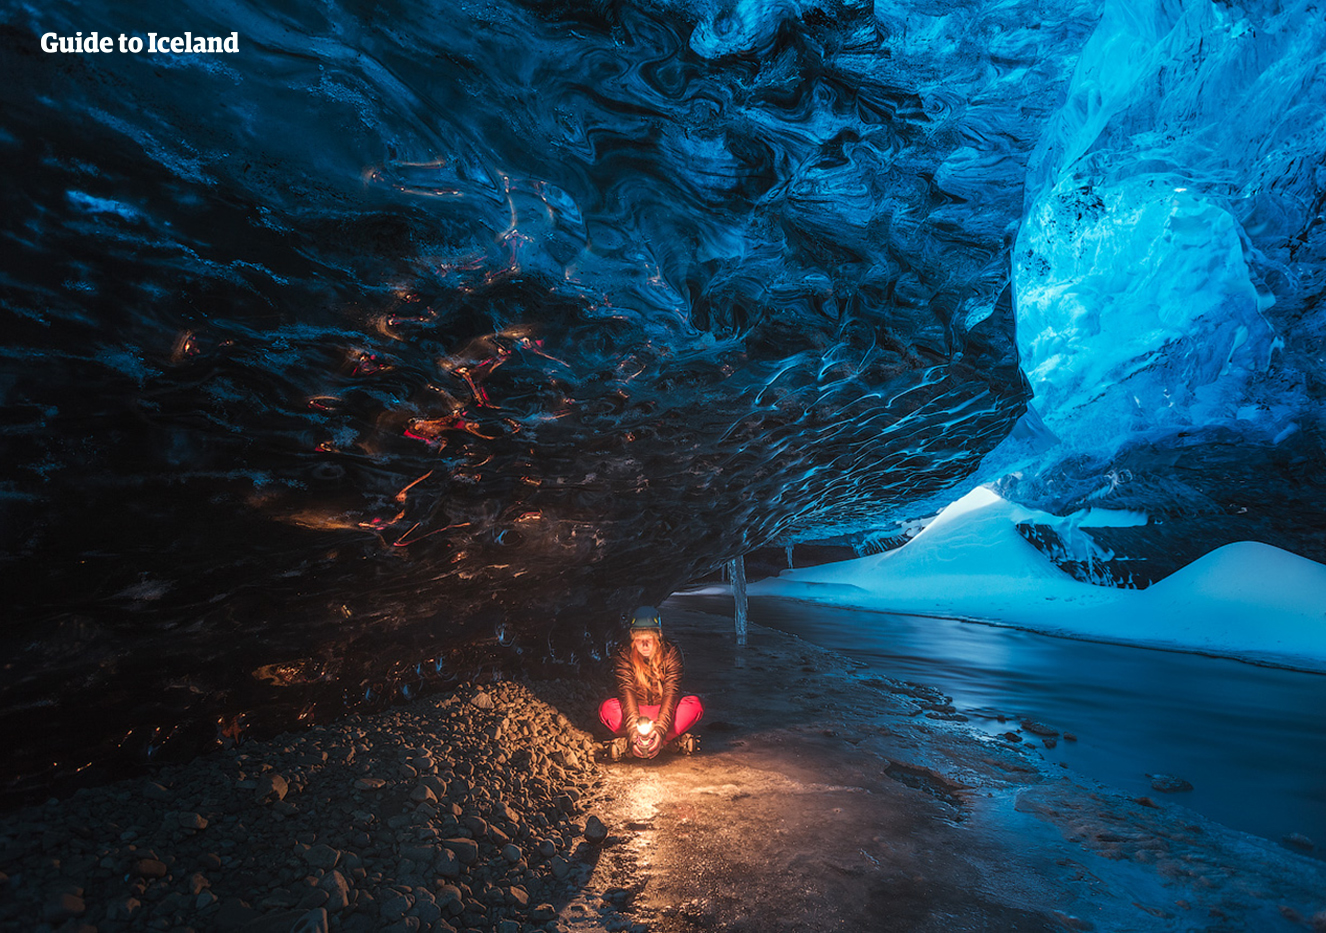 Ледниковые пещеры естественного происхождения доступны для посещения  с ноября по март.